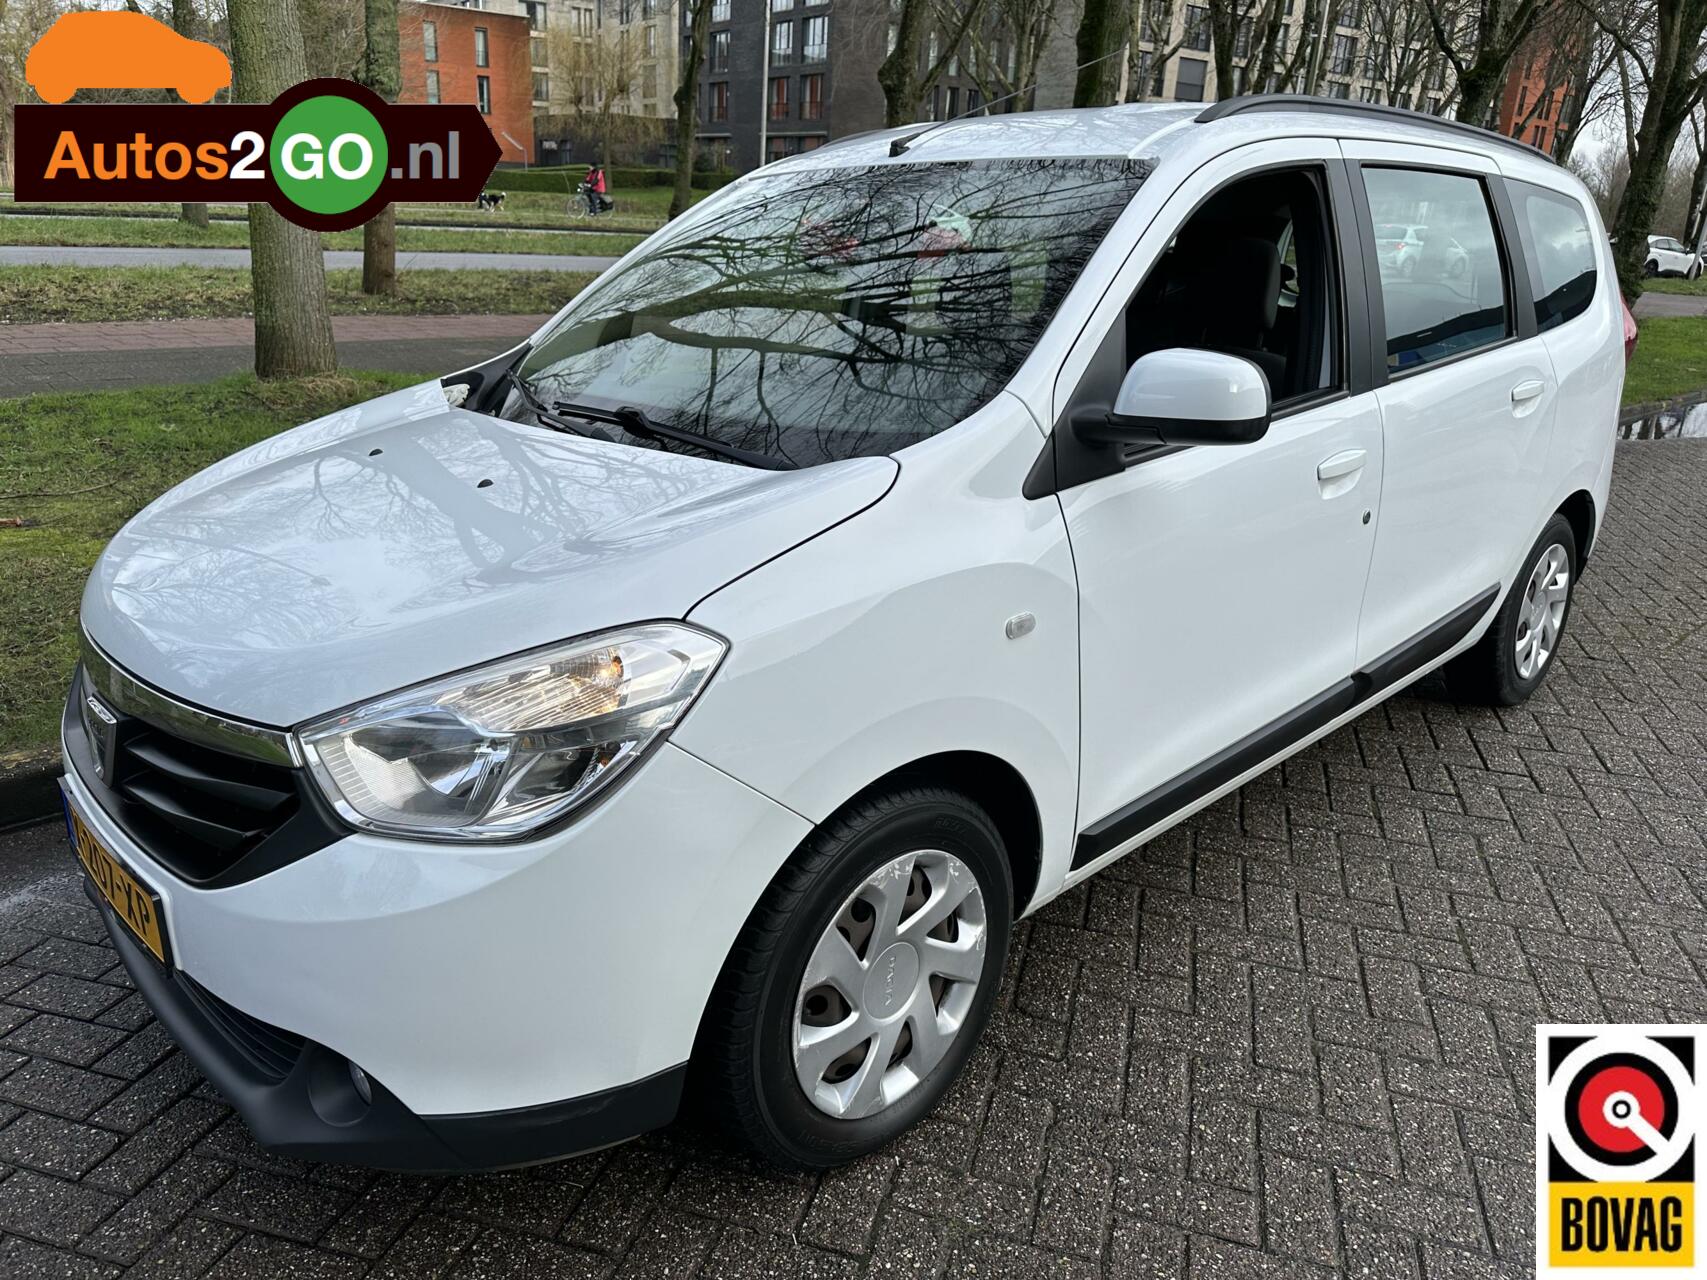 Dacia Lodgy 1.6 MPi 5p. I Airco I Navi I parkeersensor I rijklaar I apk nieuw I bij viaBOVAG.nl